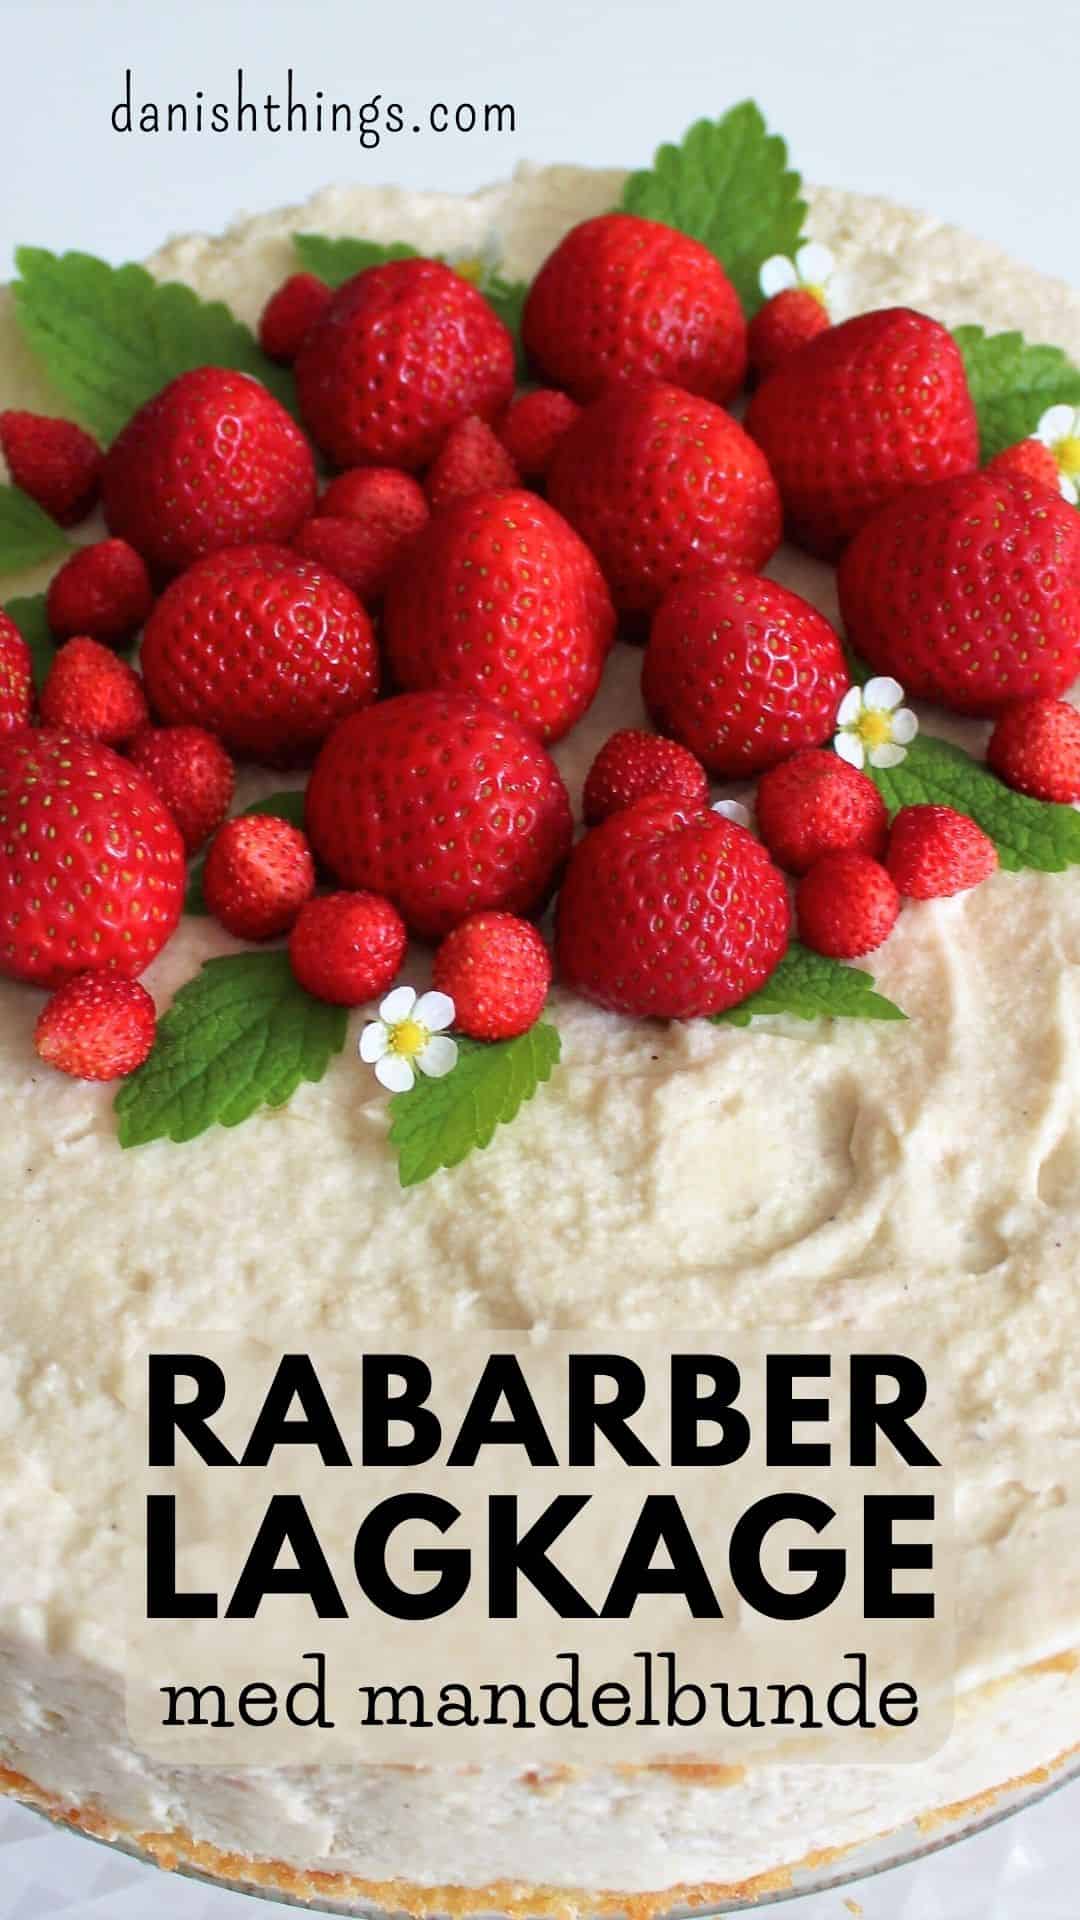 Rabarberlagkage. En let, luftig og lækker lagkage med rabarbermousse og mandelbunde. Dejlig moussekage til sommerfest og fødselsdag. Få tips til lagkagebundene og hvordan du kan mixe med nogle af de andre lagkager med mousse. Find opskrifter, gratis print og inspiration til årets gang på danishthings.com © Christel Parby - Danish Things #DanishThings #rabarberlagkage #kagebunde #lagkagebunde #rabarber #sommer #fødselsdag #fest #lagkagebund #mandler #kartoffelmel #opskrift